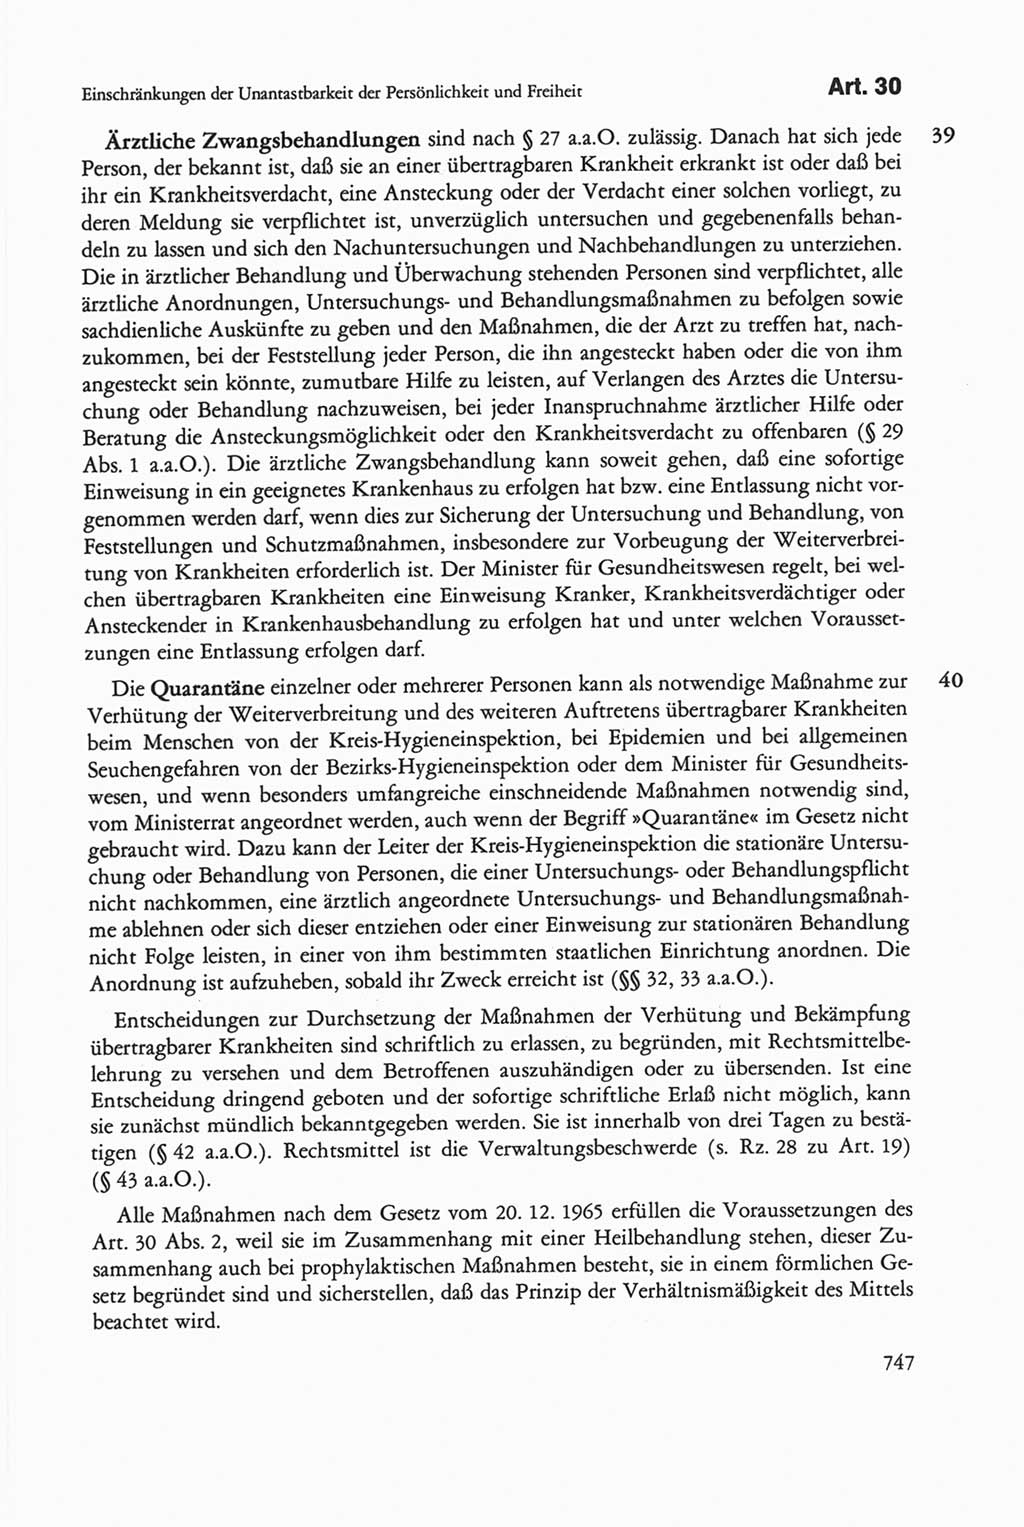 Die sozialistische Verfassung der Deutschen Demokratischen Republik (DDR), Kommentar 1982, Seite 747 (Soz. Verf. DDR Komm. 1982, S. 747)